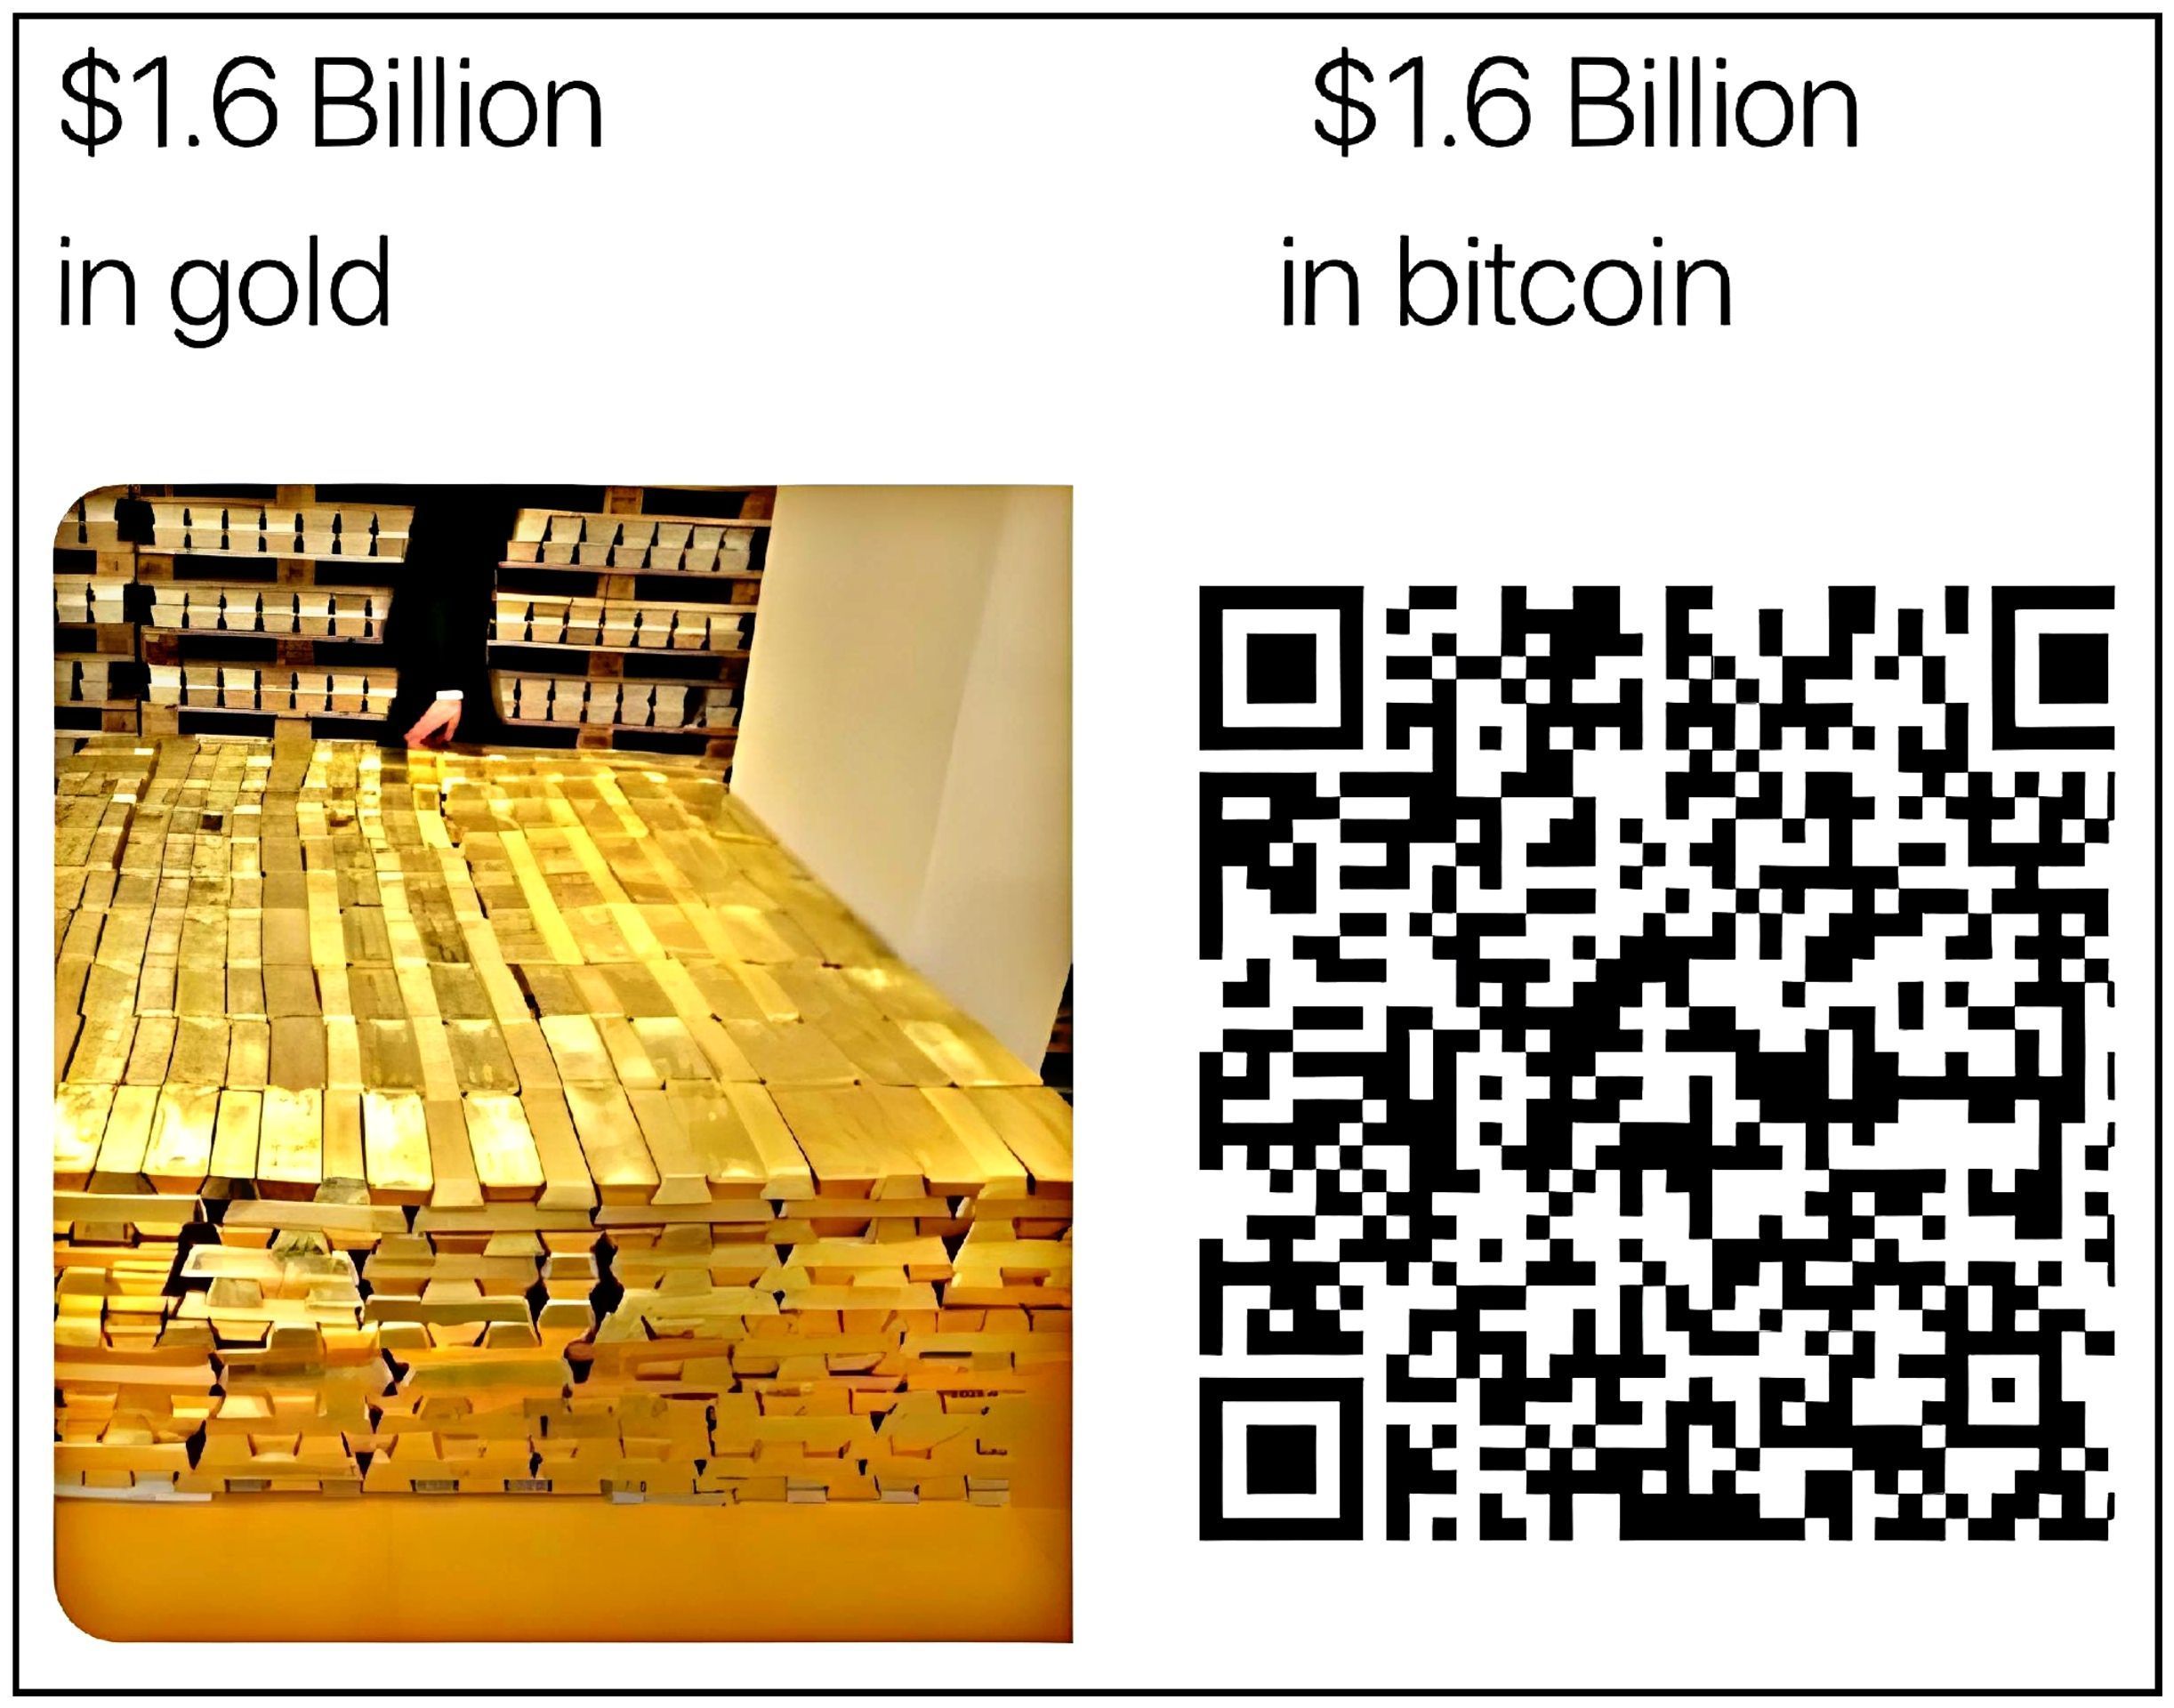 $1 .6 Billion $1 .6 Billion
in gold In bitcoin
LNT ;i ses Ee il. !
2 ONRER P4 E . [=] pr; [=
TN od e E :e re| RE AY. y J o
g e = SAT gn fo
n 5 a 0—\ dae" 1 n Fe )
F Wy Y Way s AL A
, LIA. e
s mi [mw] j= = F «